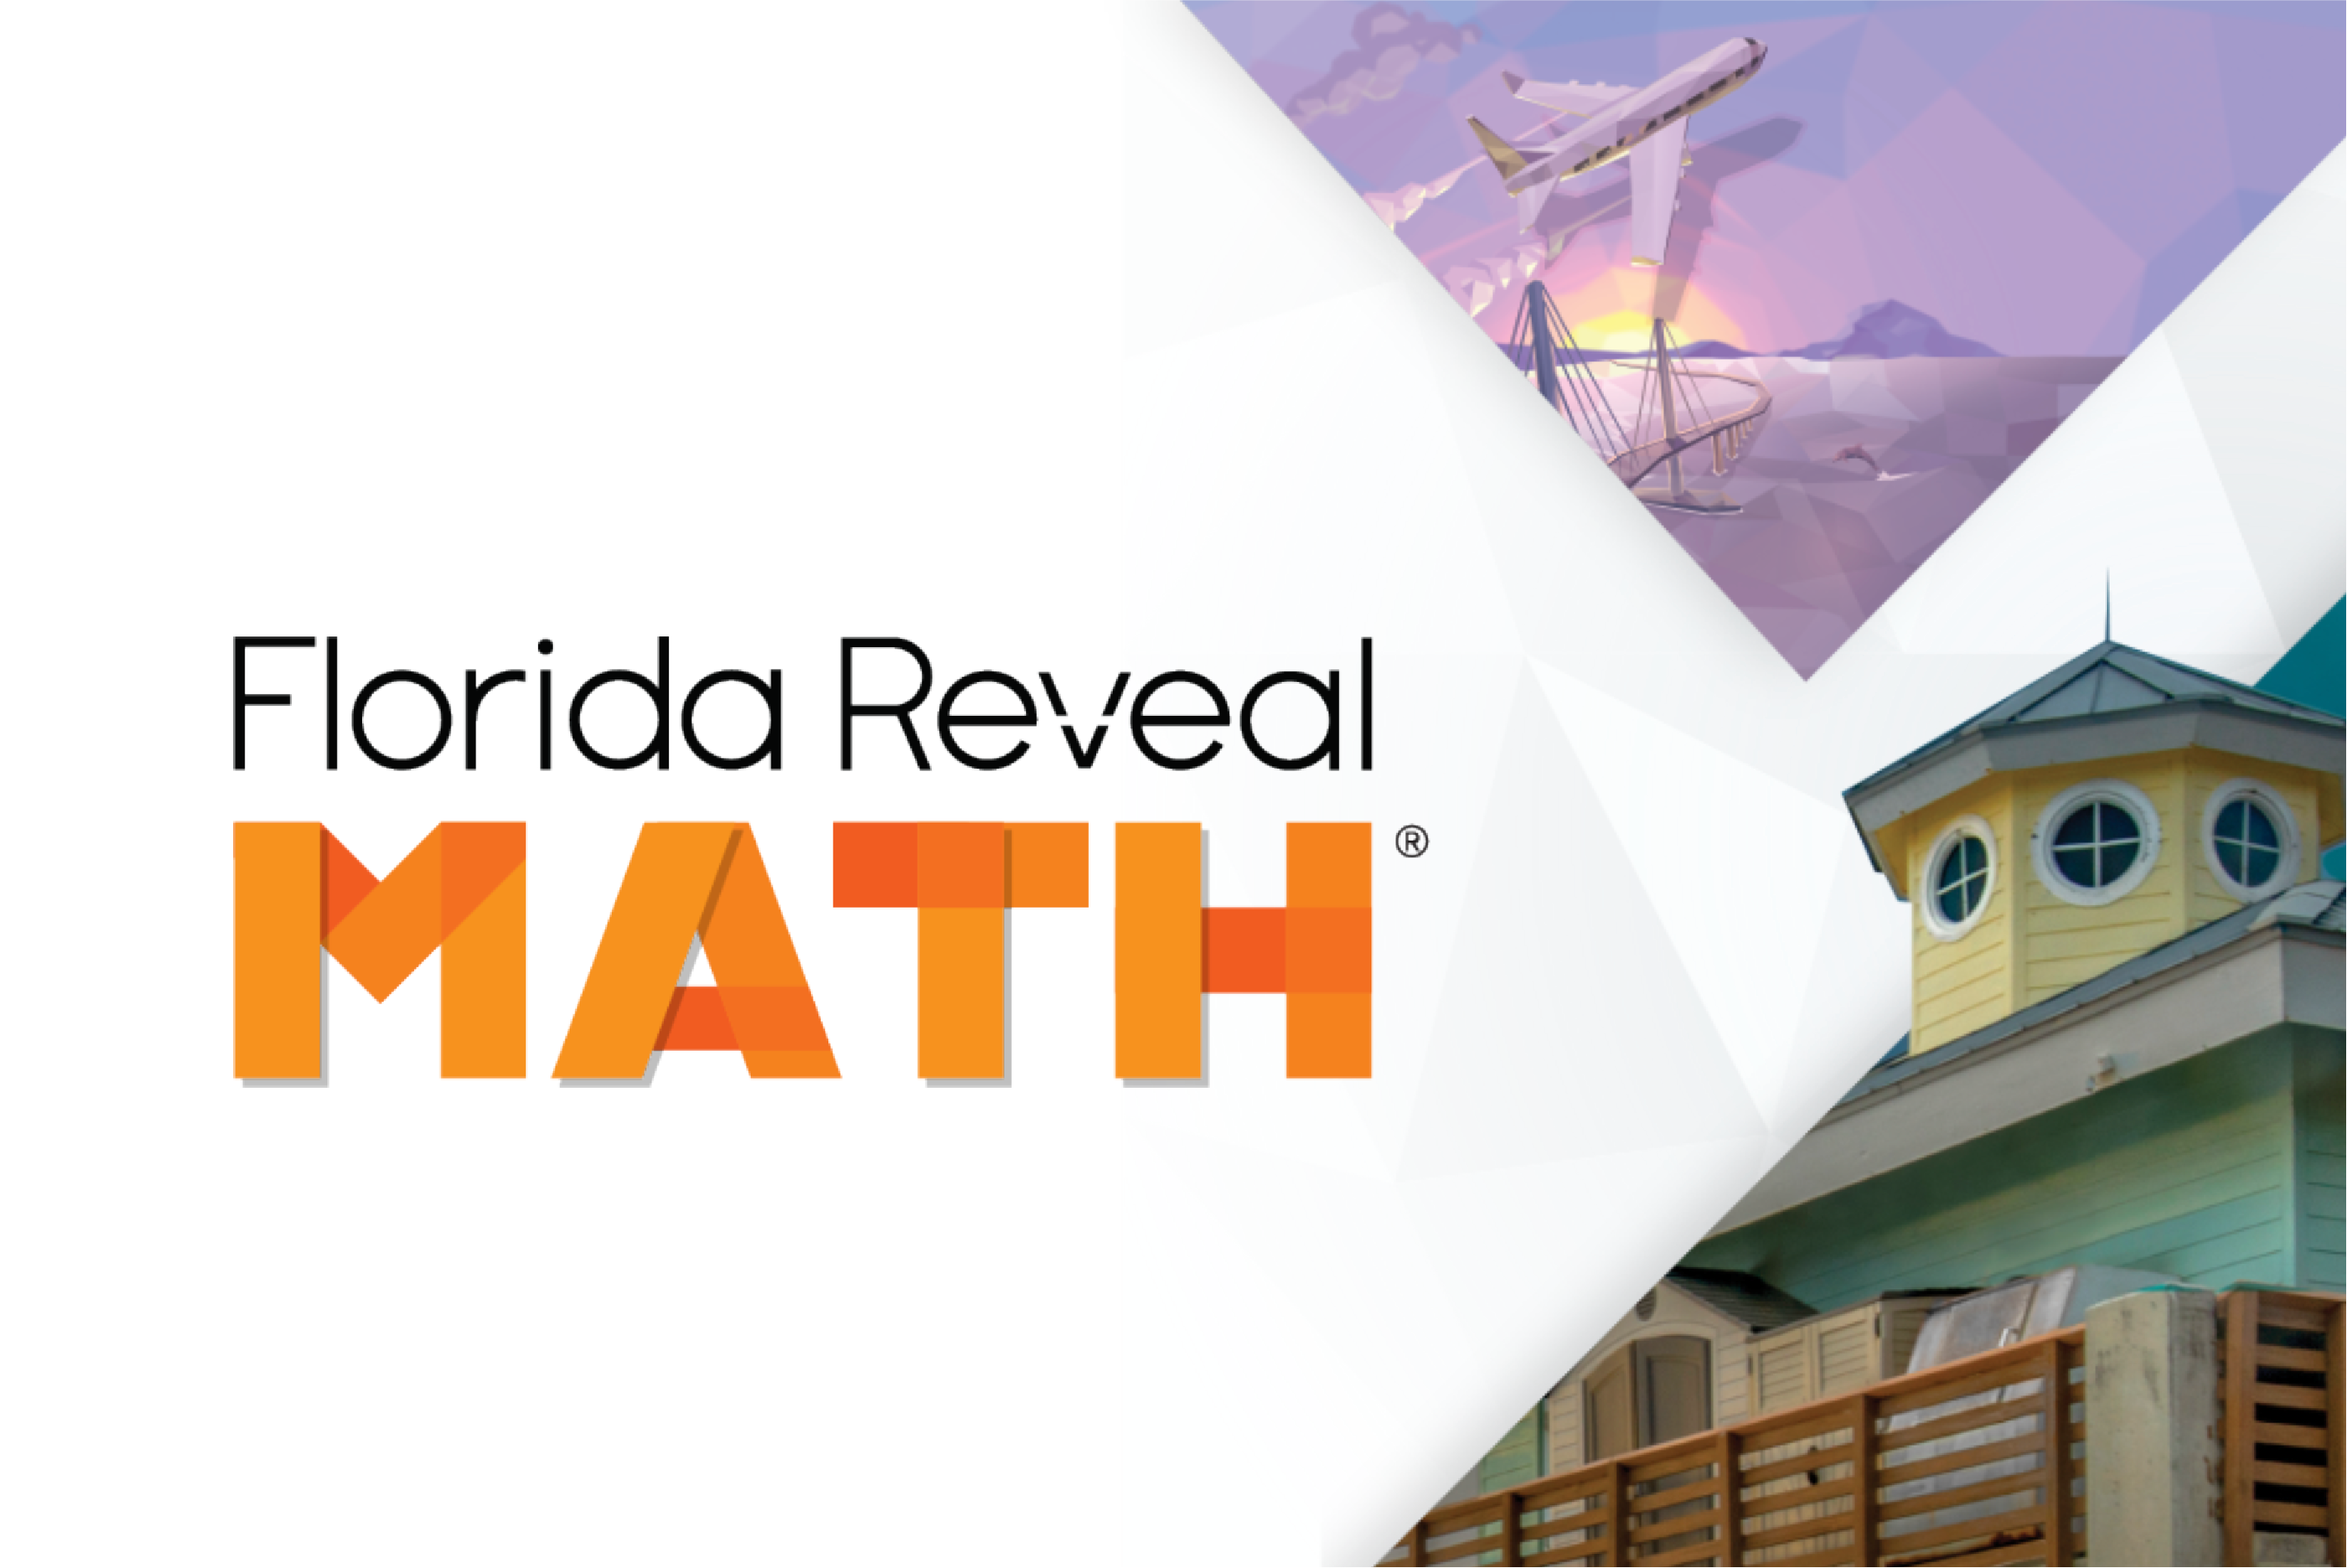 Florida Reveal Math